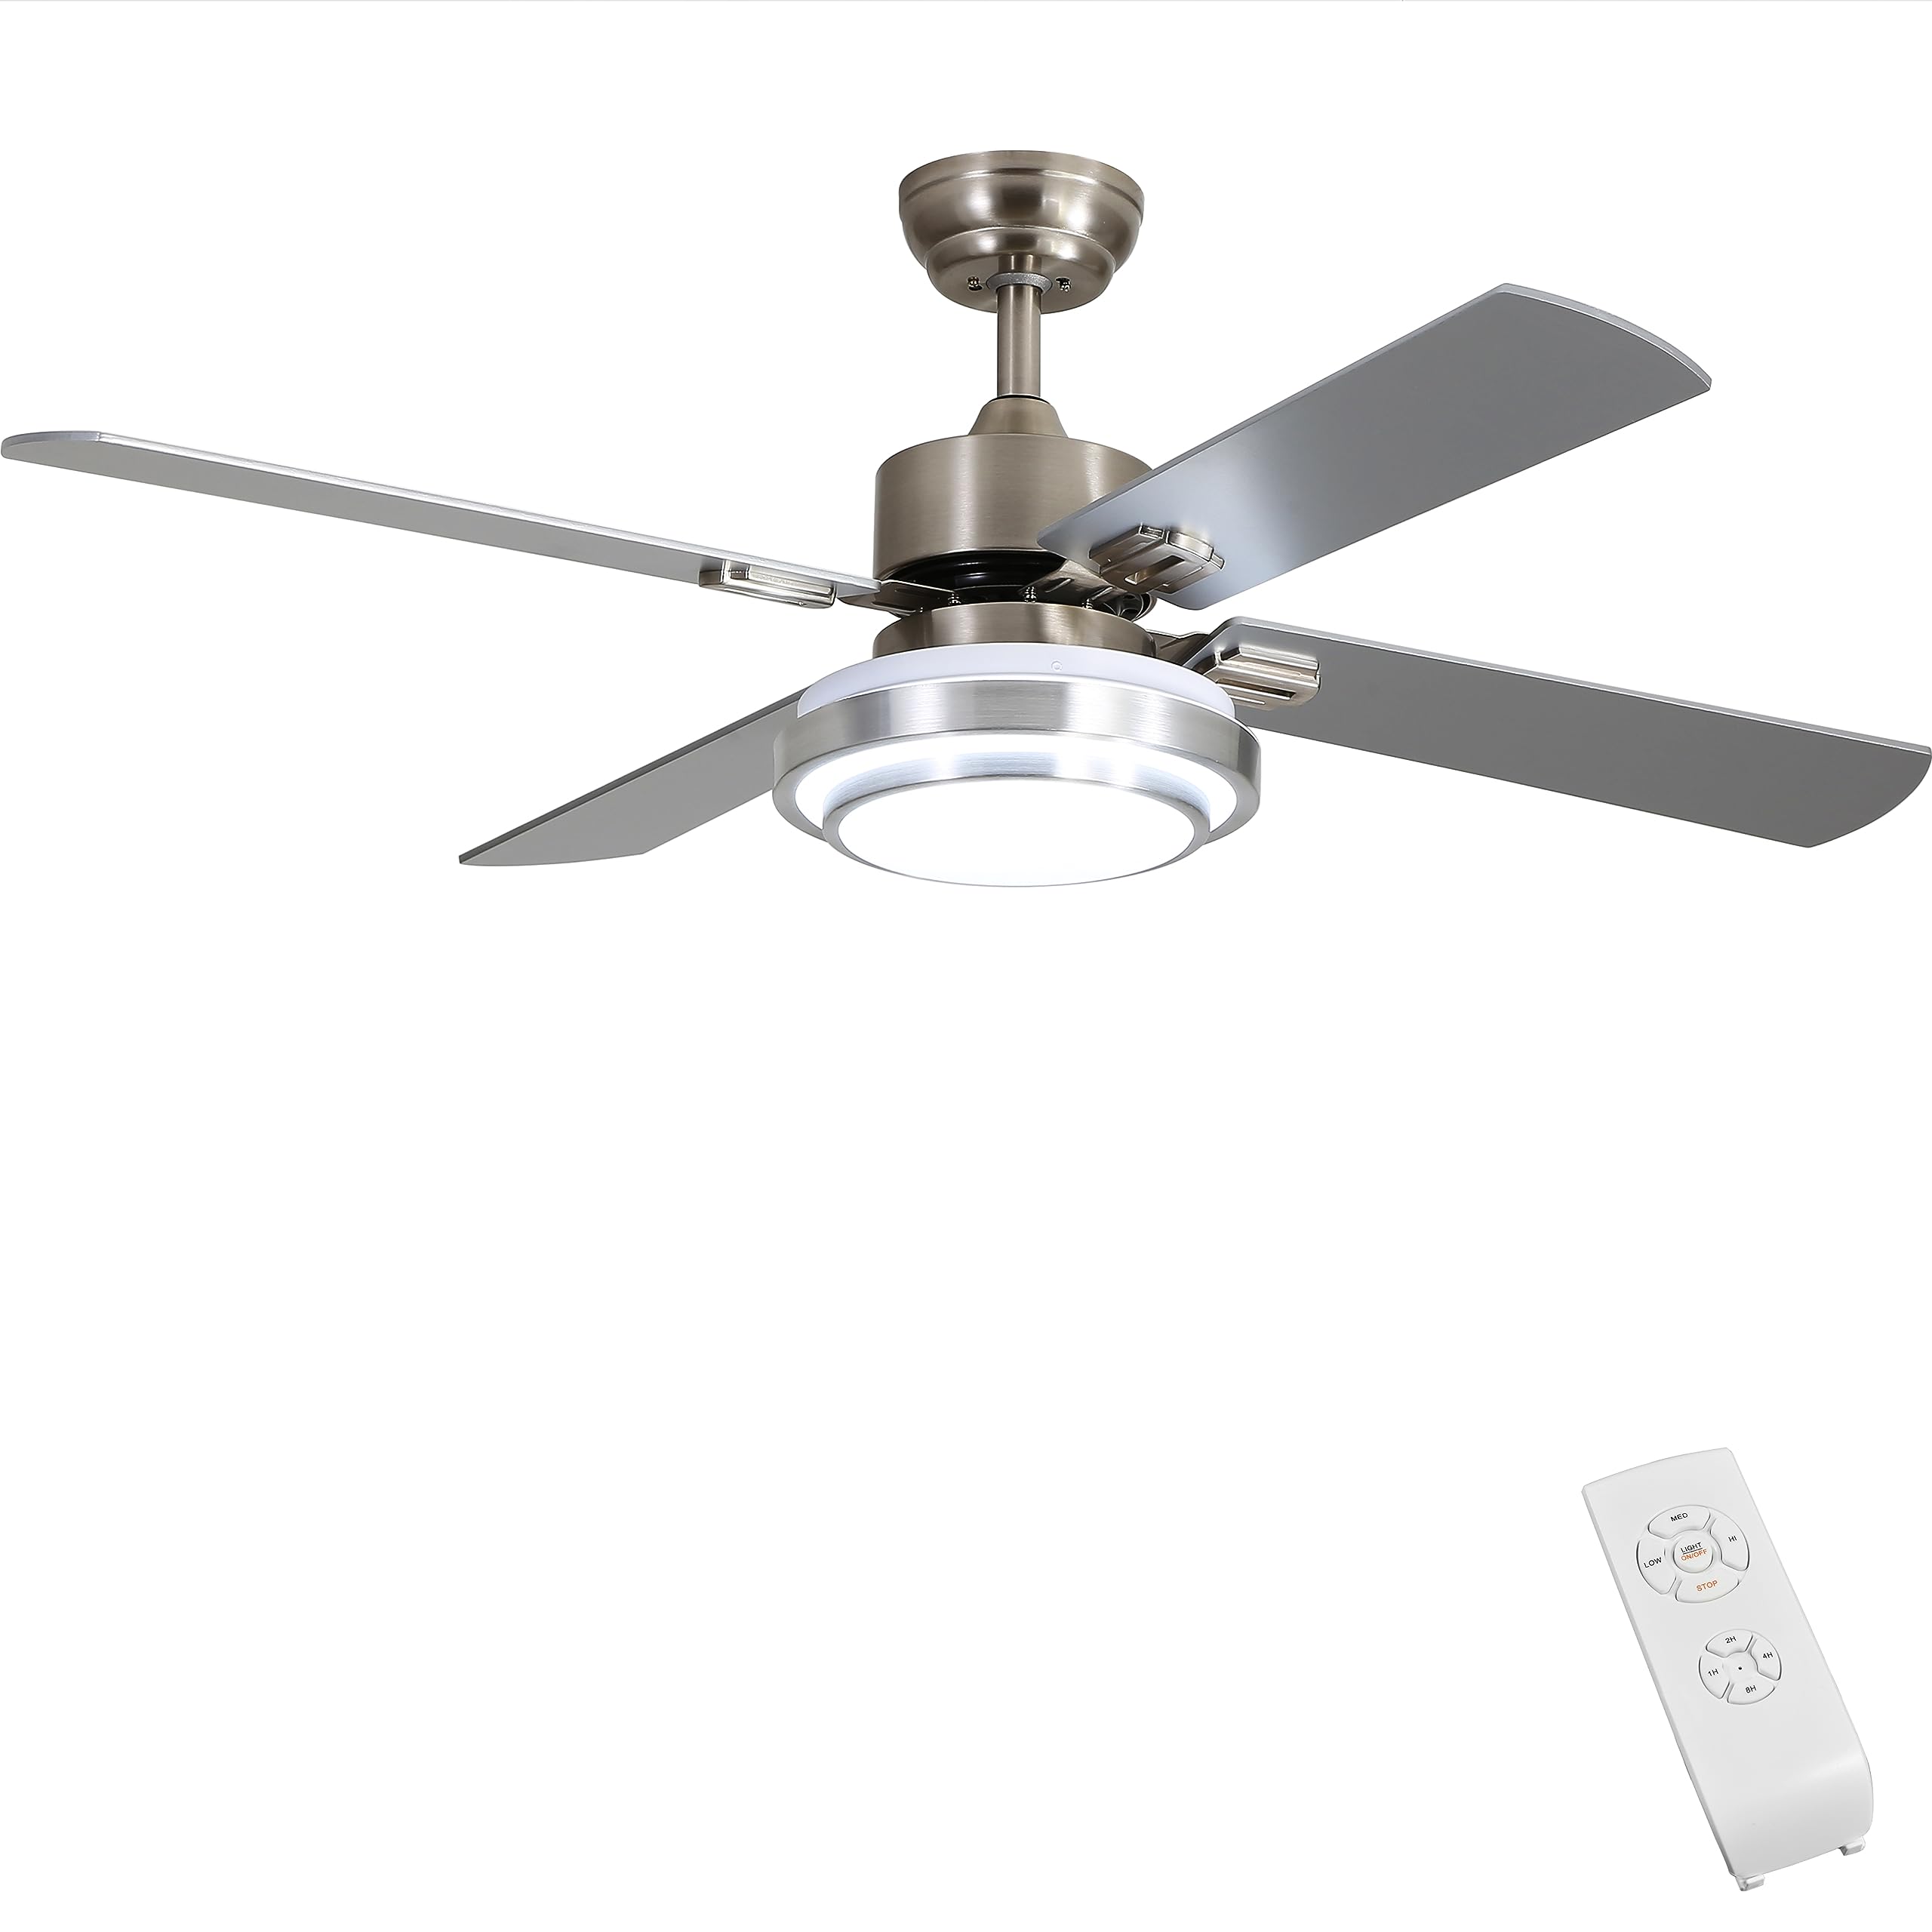 FINXIN Brushed Nickel Indoor Ceiling Fan